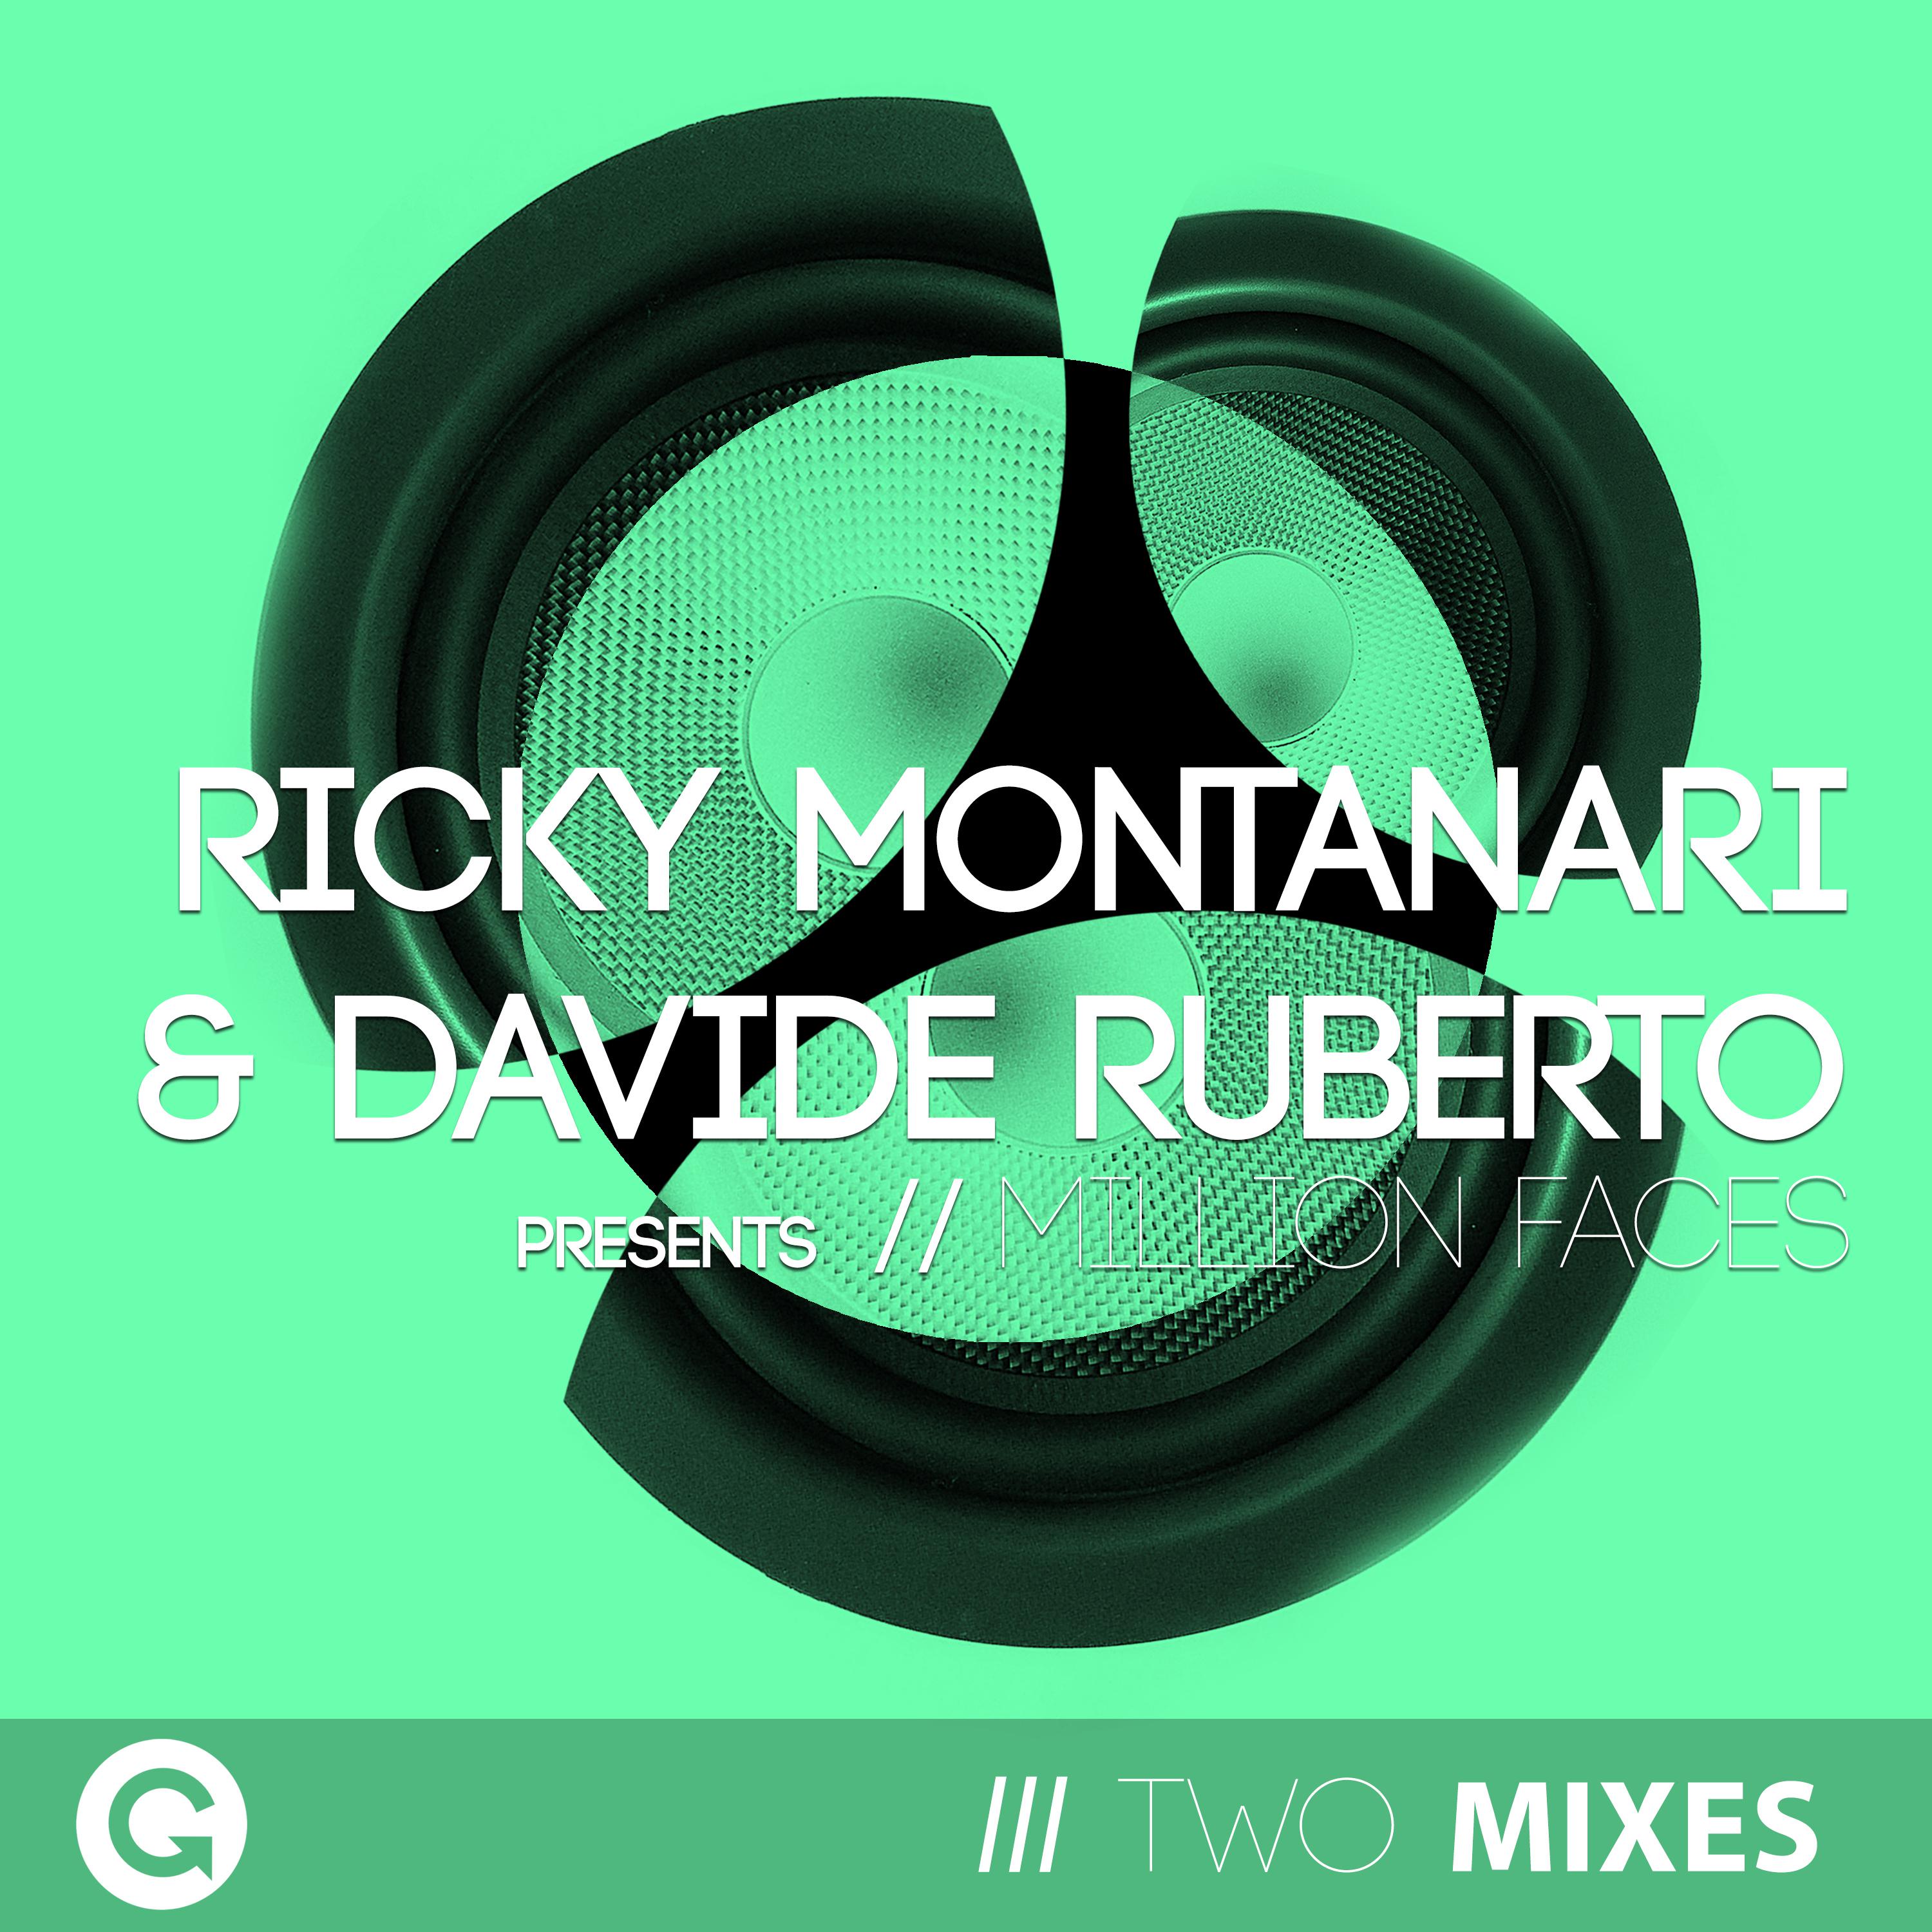 Ricky Montanari - Million Faces (Dub Mix)